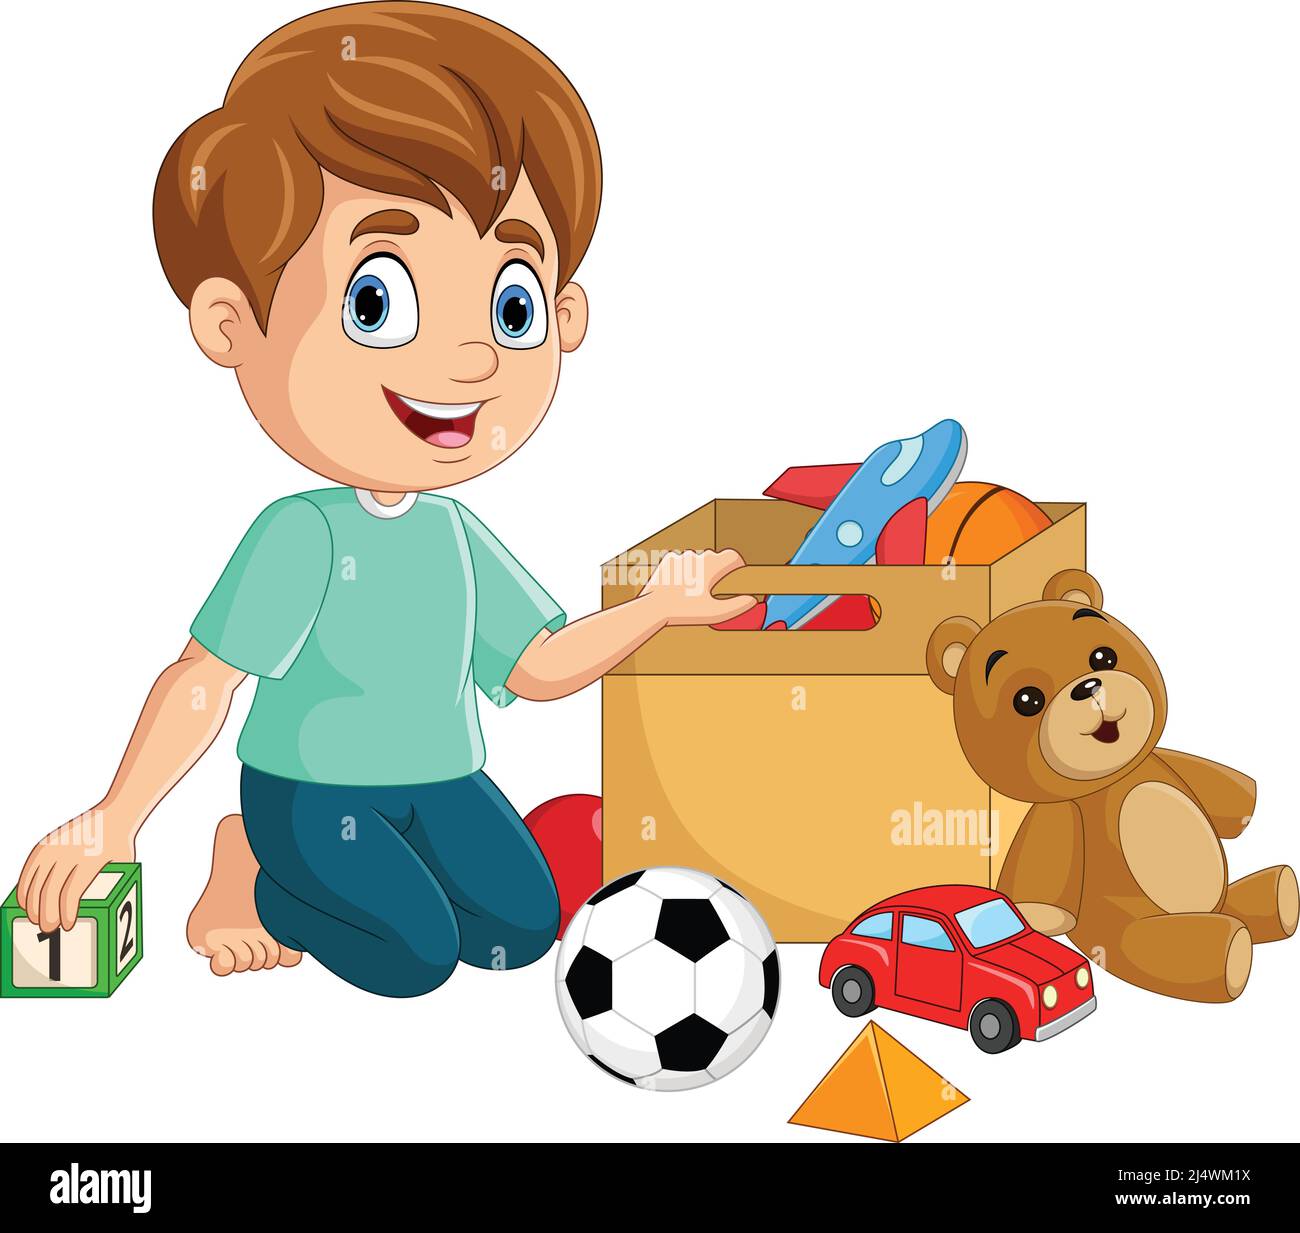 Niño jugando con juguetes Imágenes vectoriales de stock - Alamy